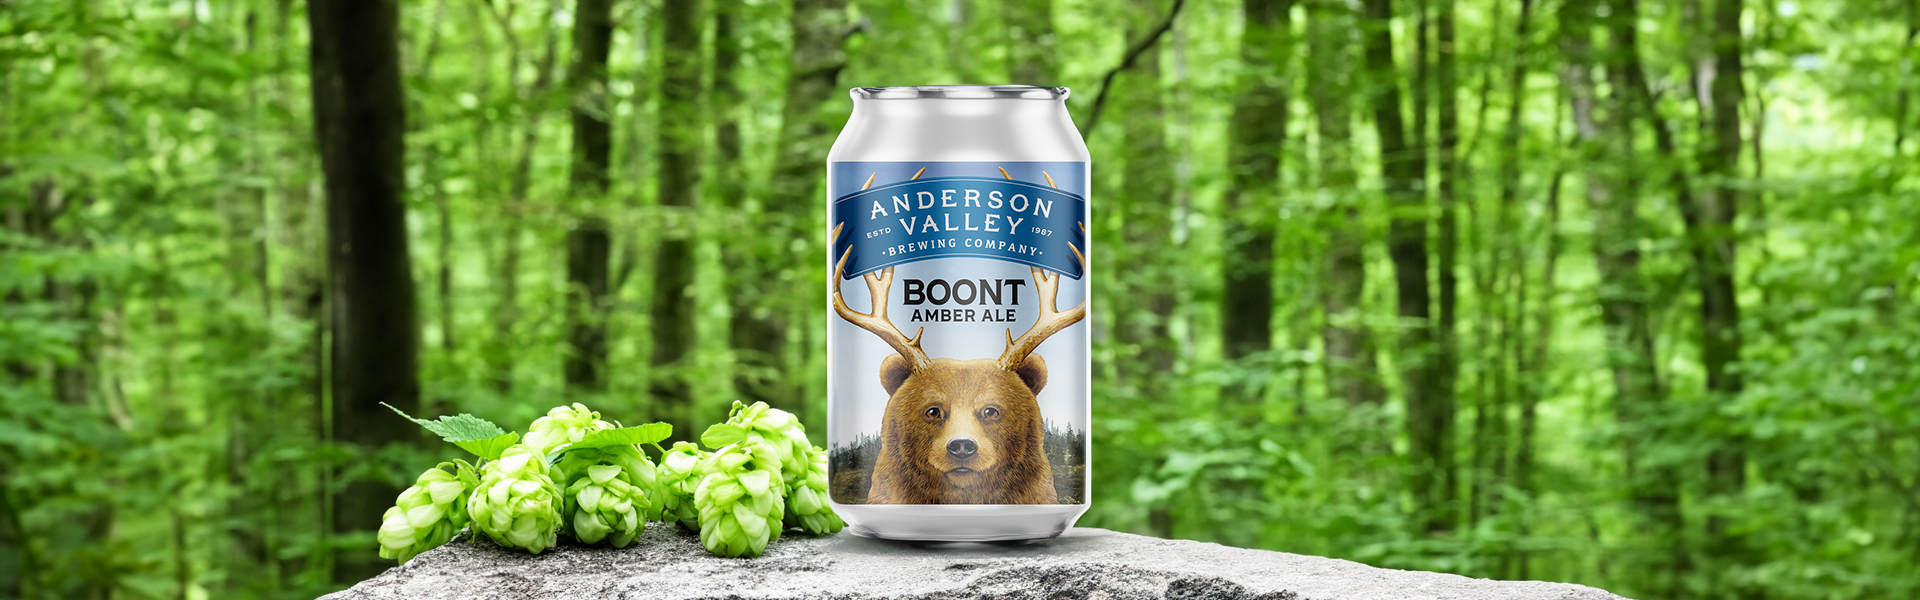 Nytt från Anderson Valley – Boont Amber Ale